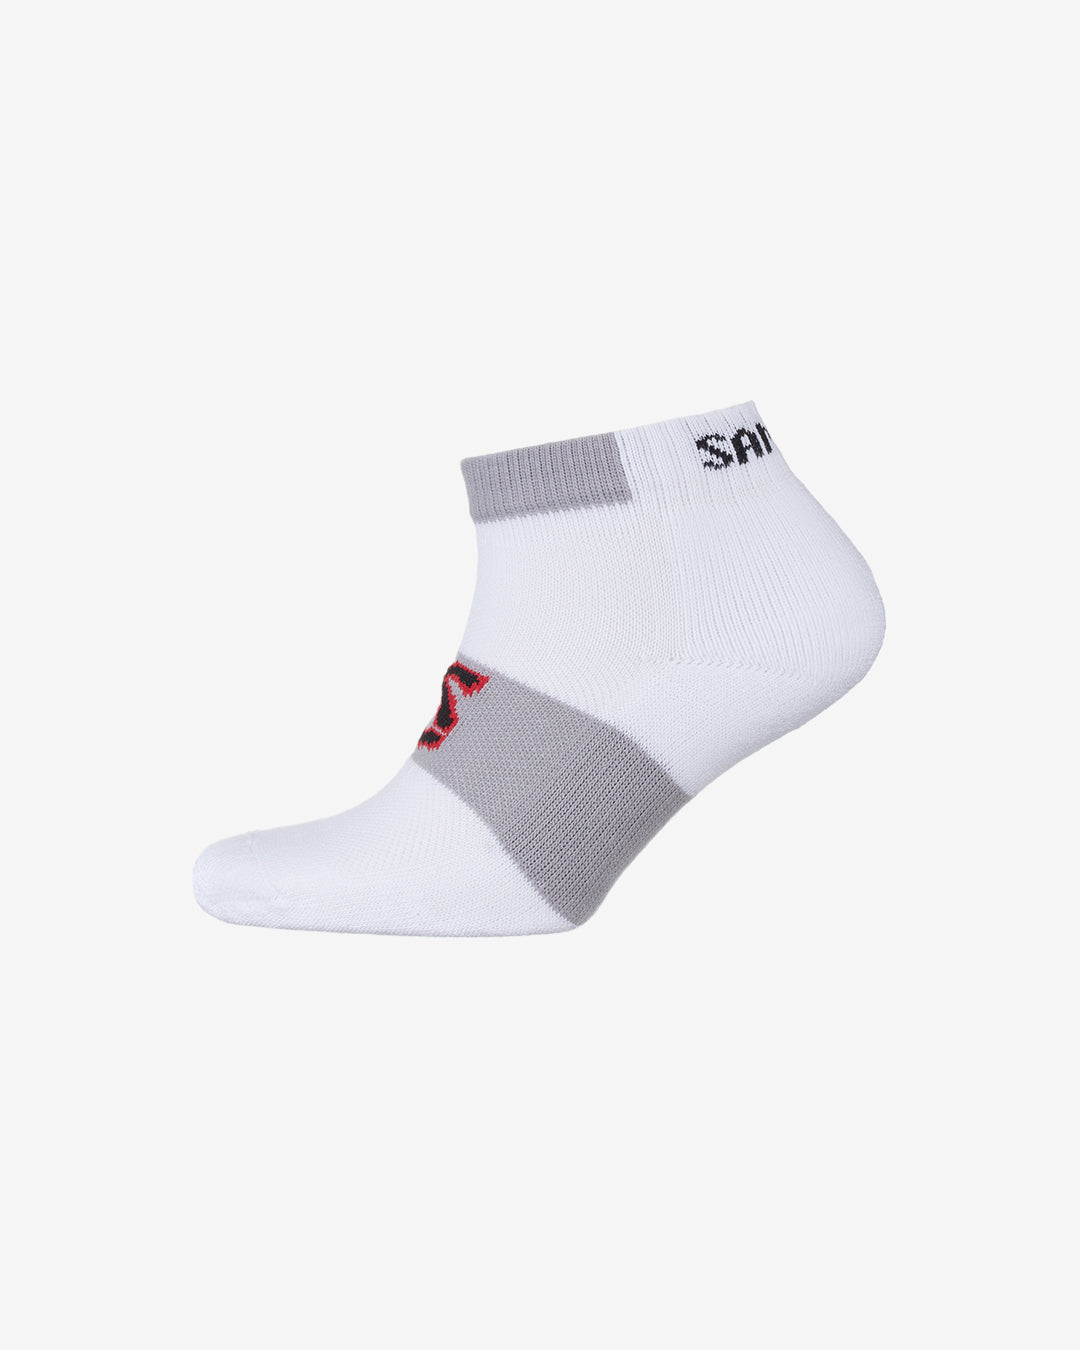 Hc: 9632 - Trainer Socks - White